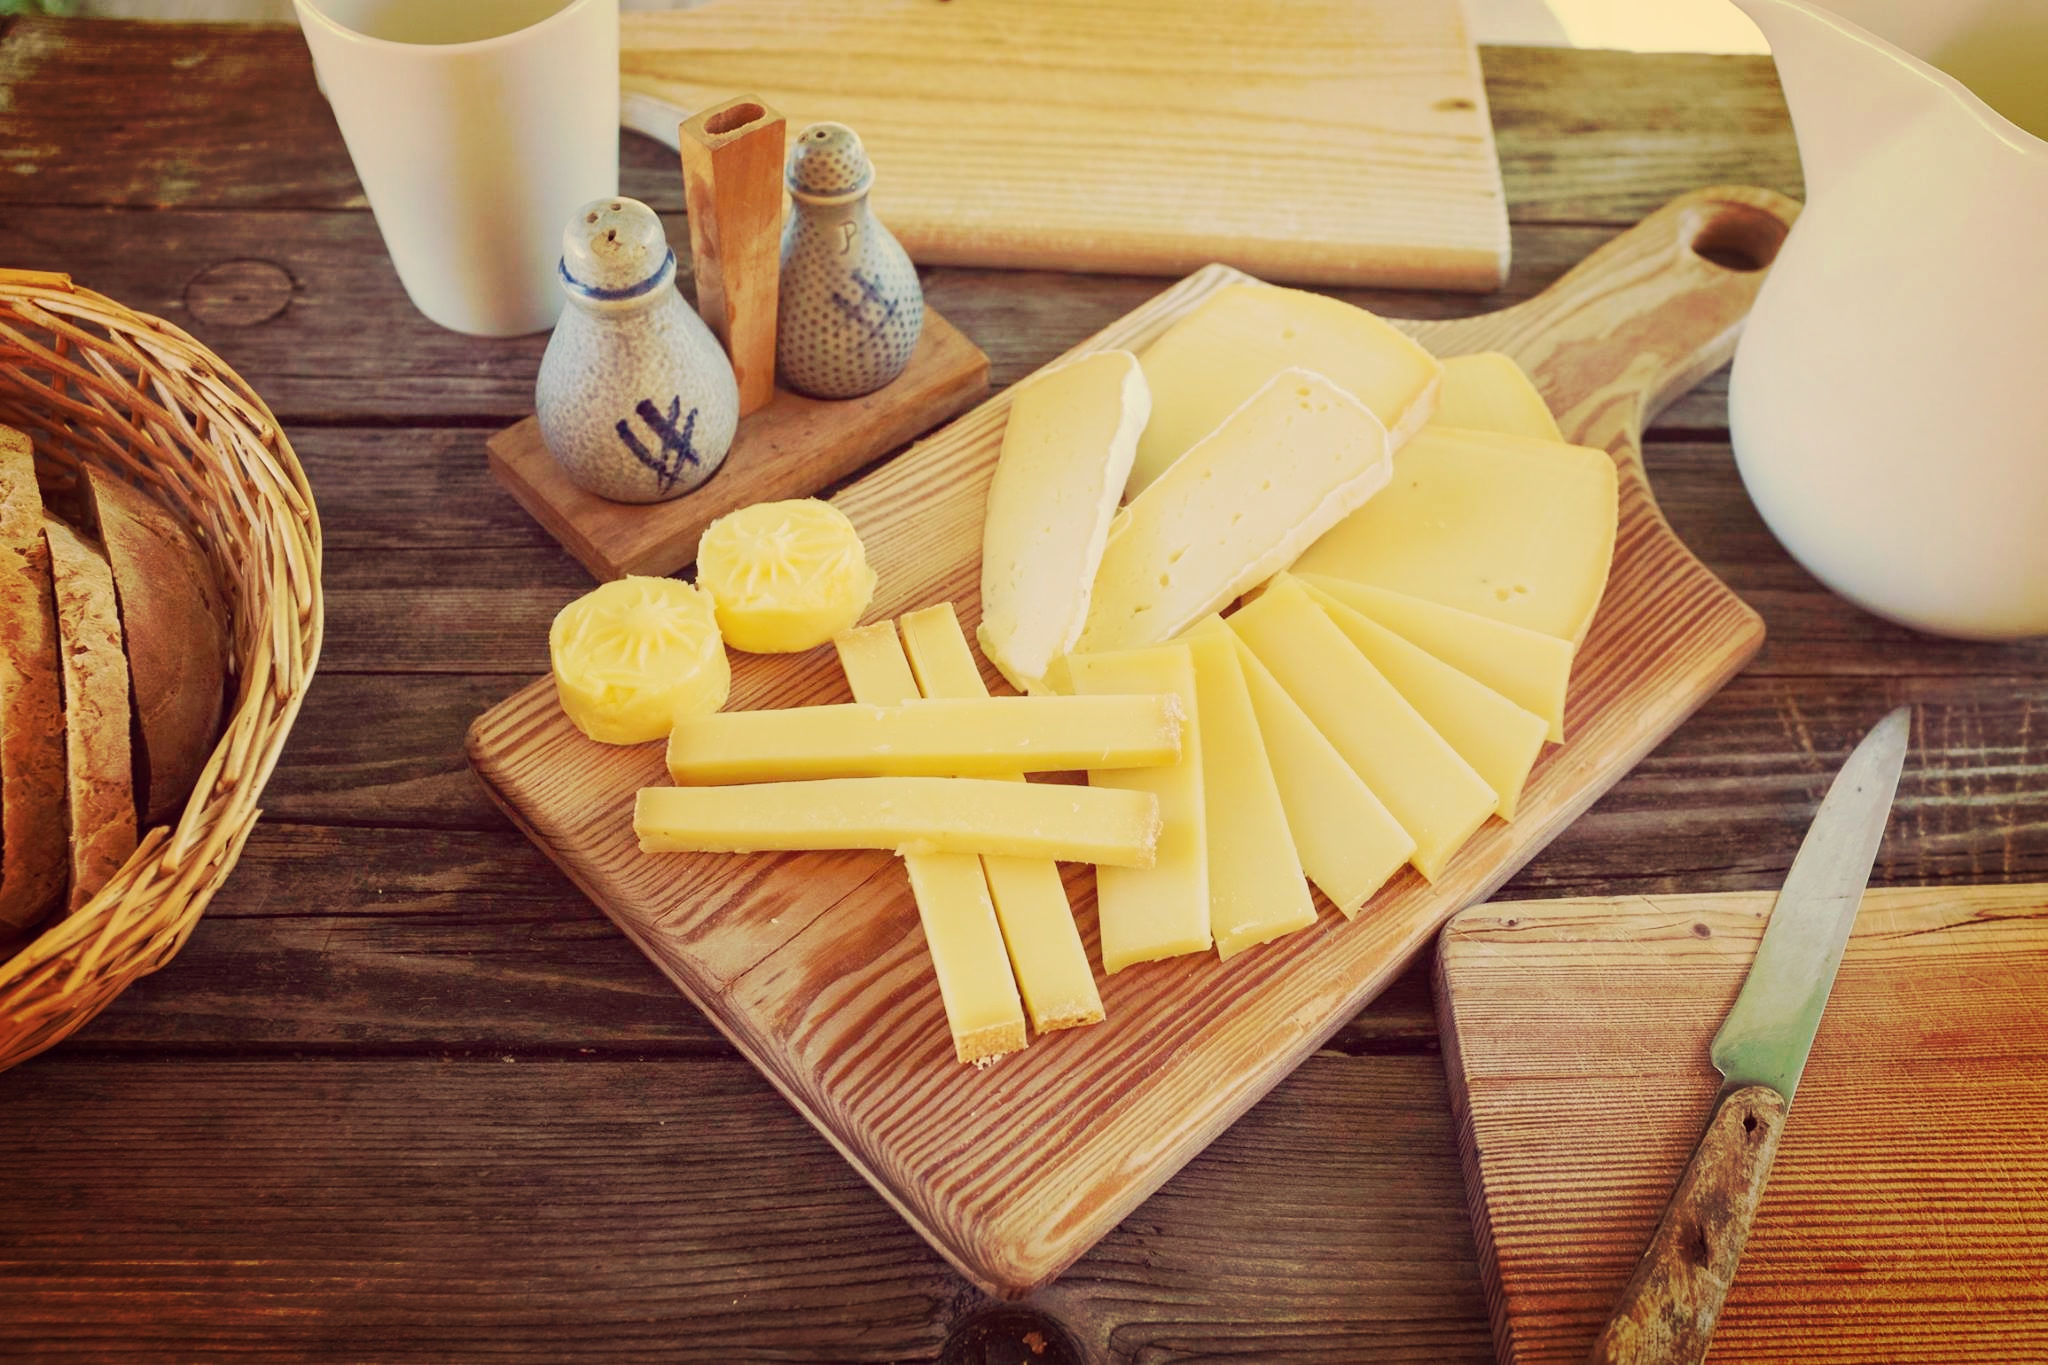 Jause mit Käse von der Alm Tirol